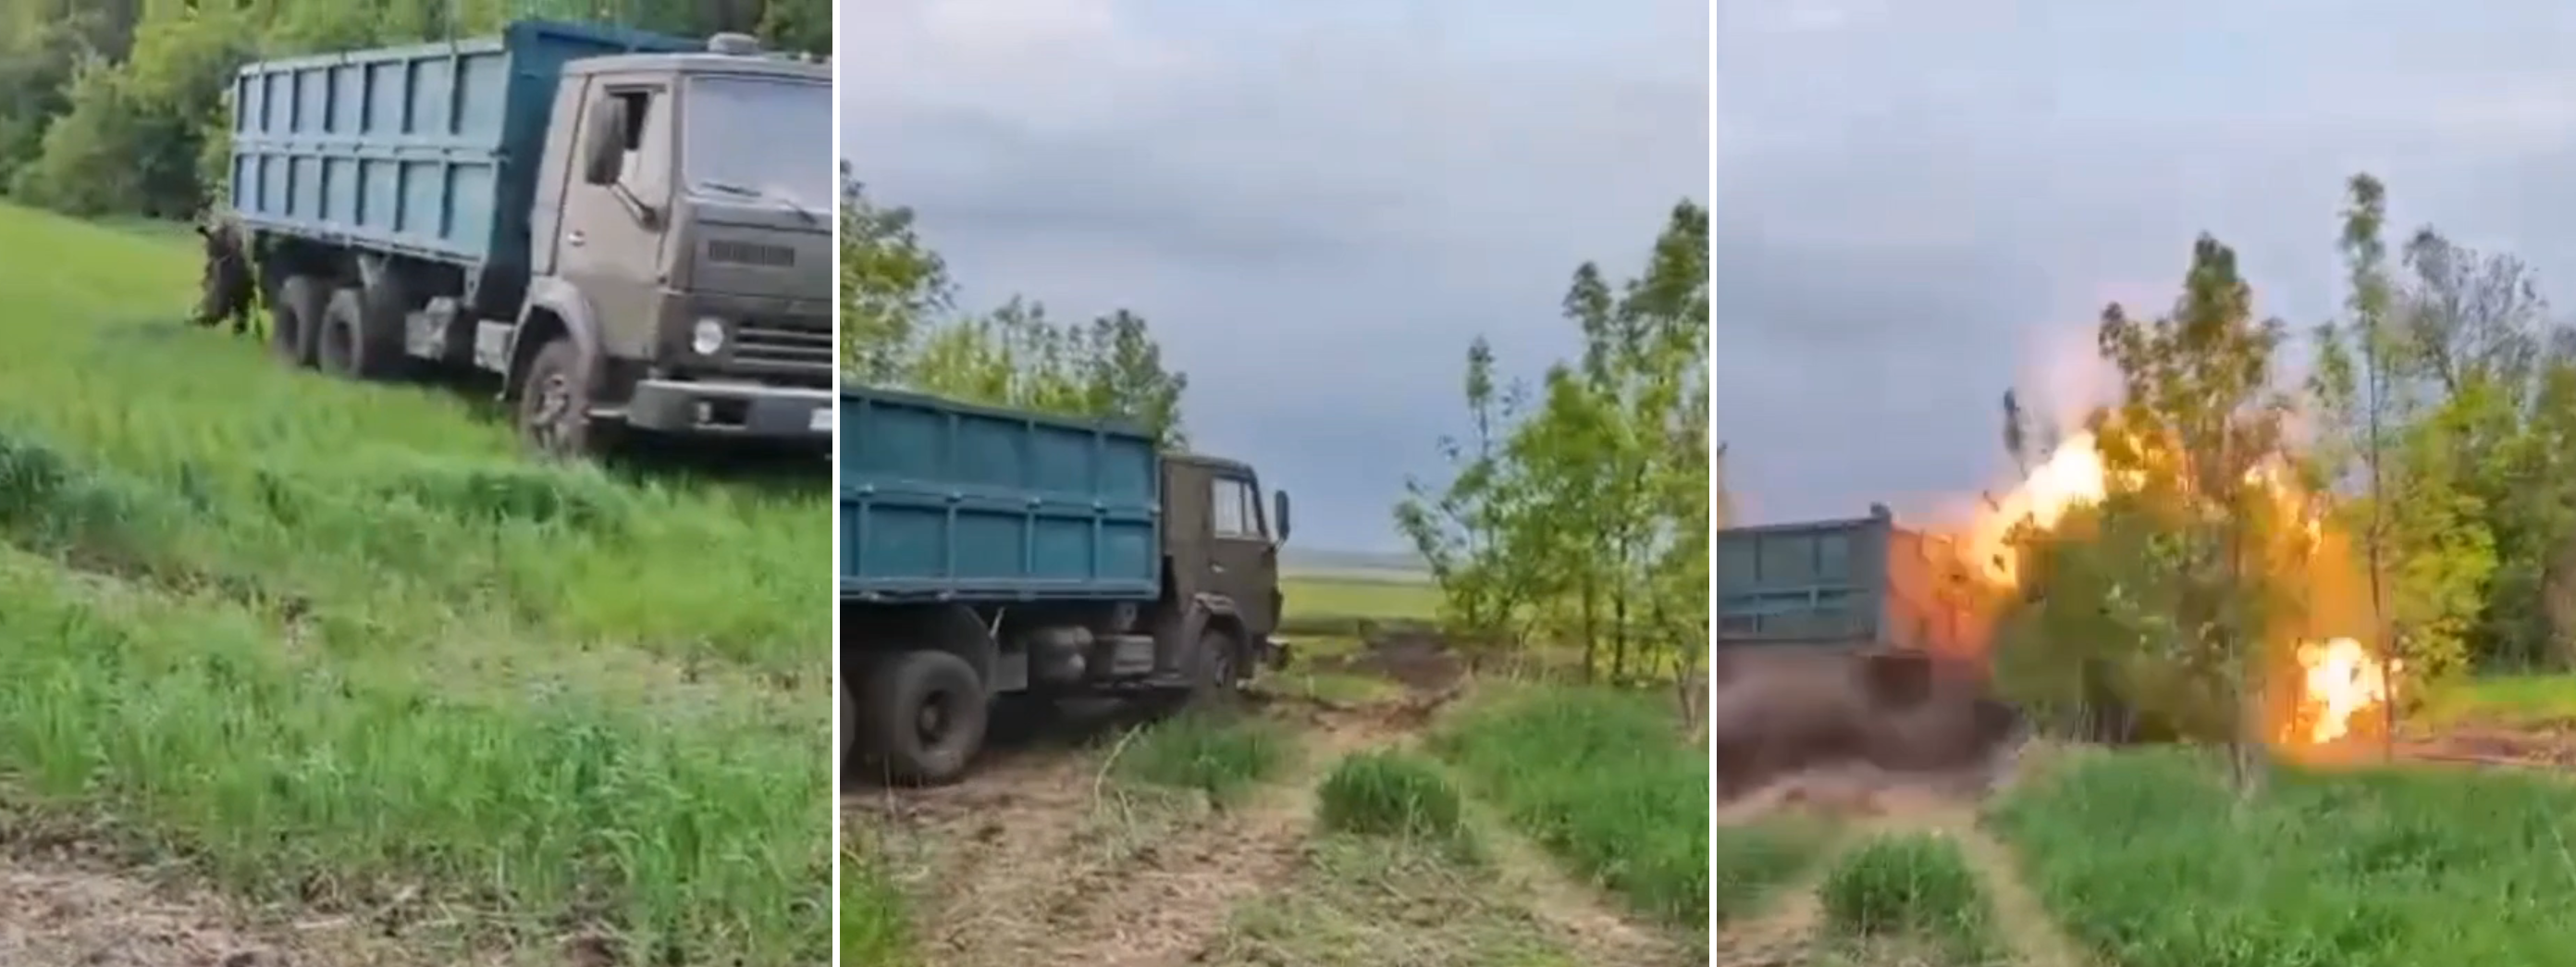 Rosjanie stworzyli KAMAZ-kamikaze do ataku na Siły Zbrojne Ukrainy, ale eksplodował 10 sekund po starcie